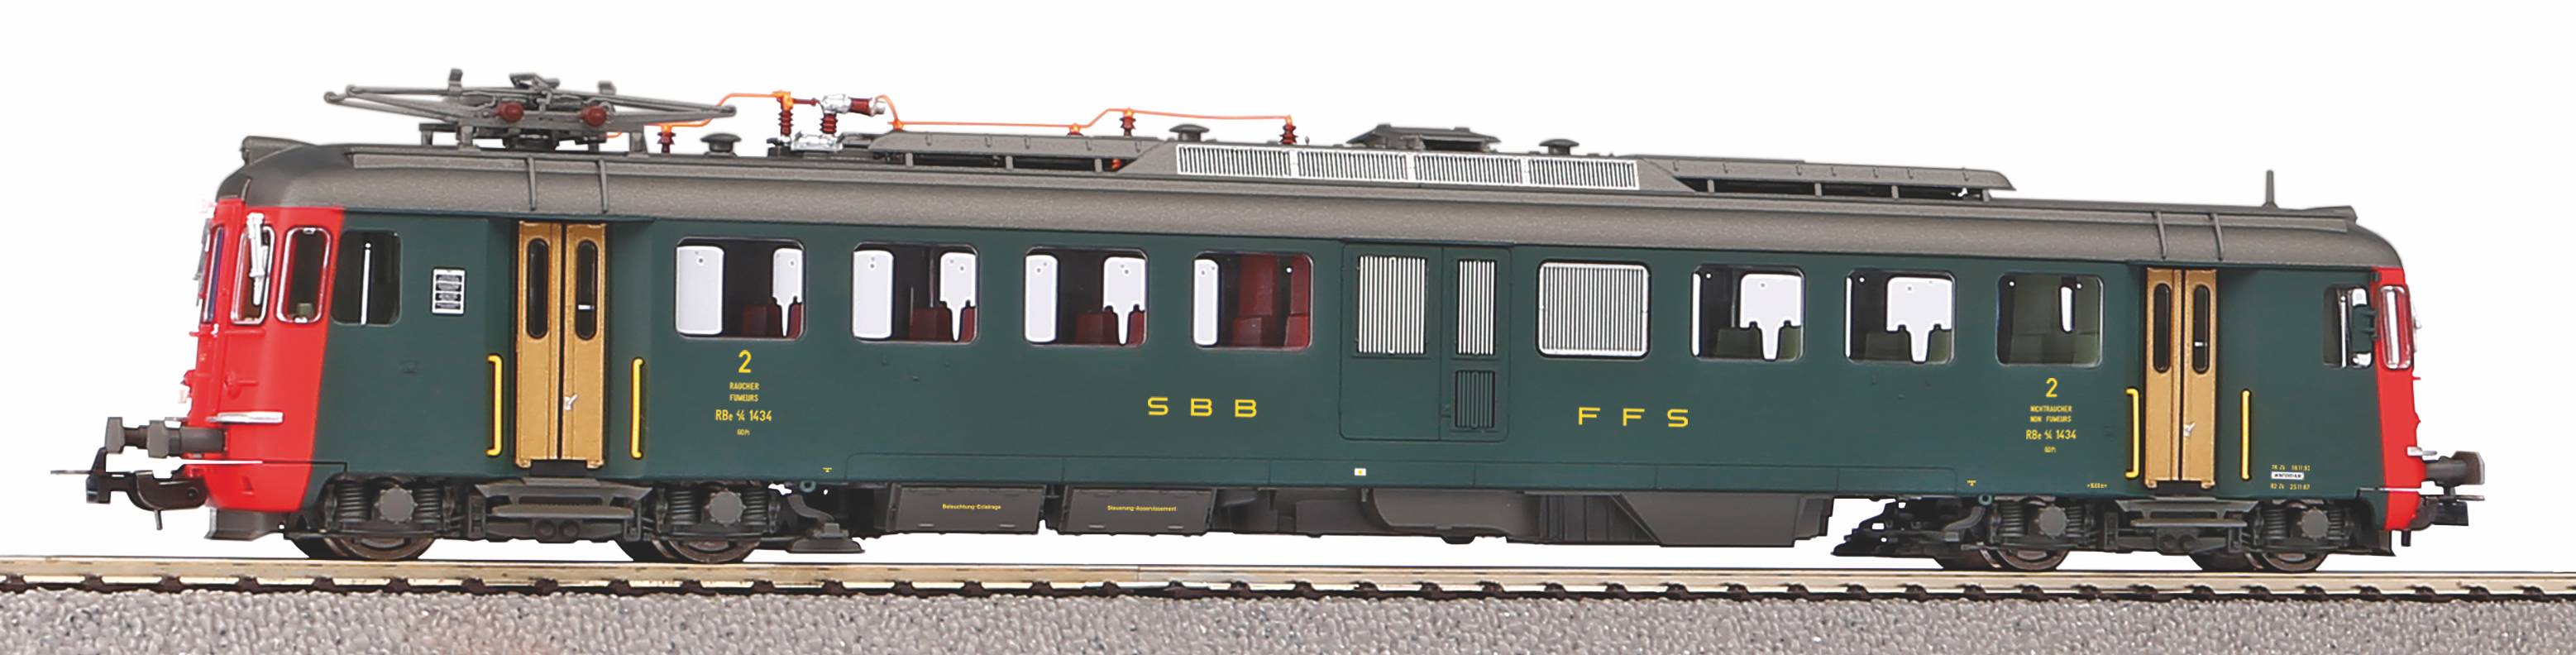 Piko 96824 H0 AC Triebzug/Sound RBe 4/4 2.Serie grün, alte Schrift SBB IV + PluX22 Dec.